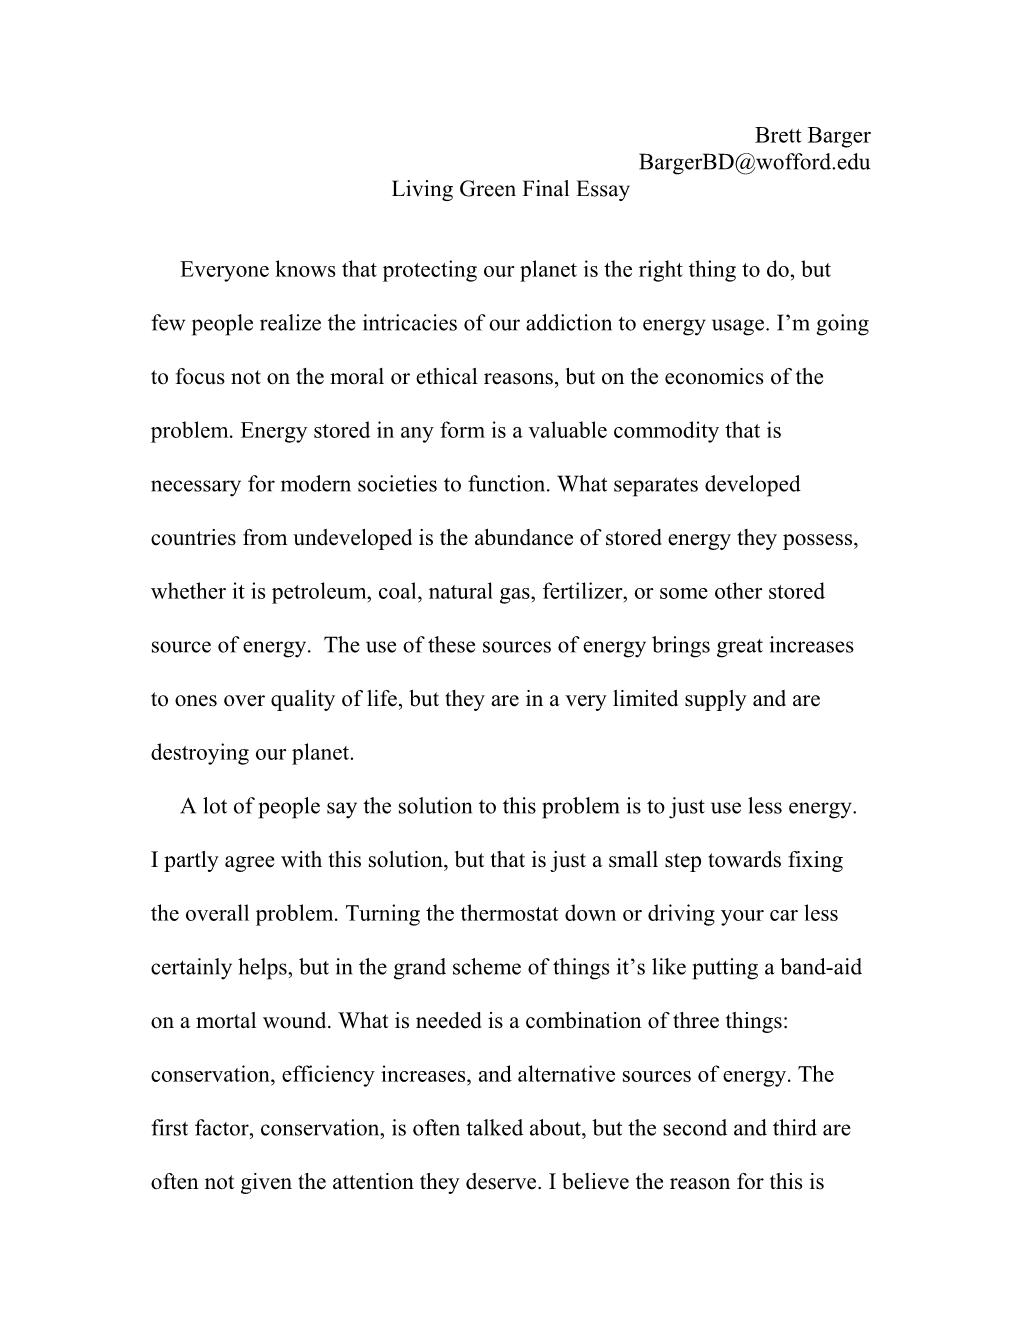 Living Green Final Essay